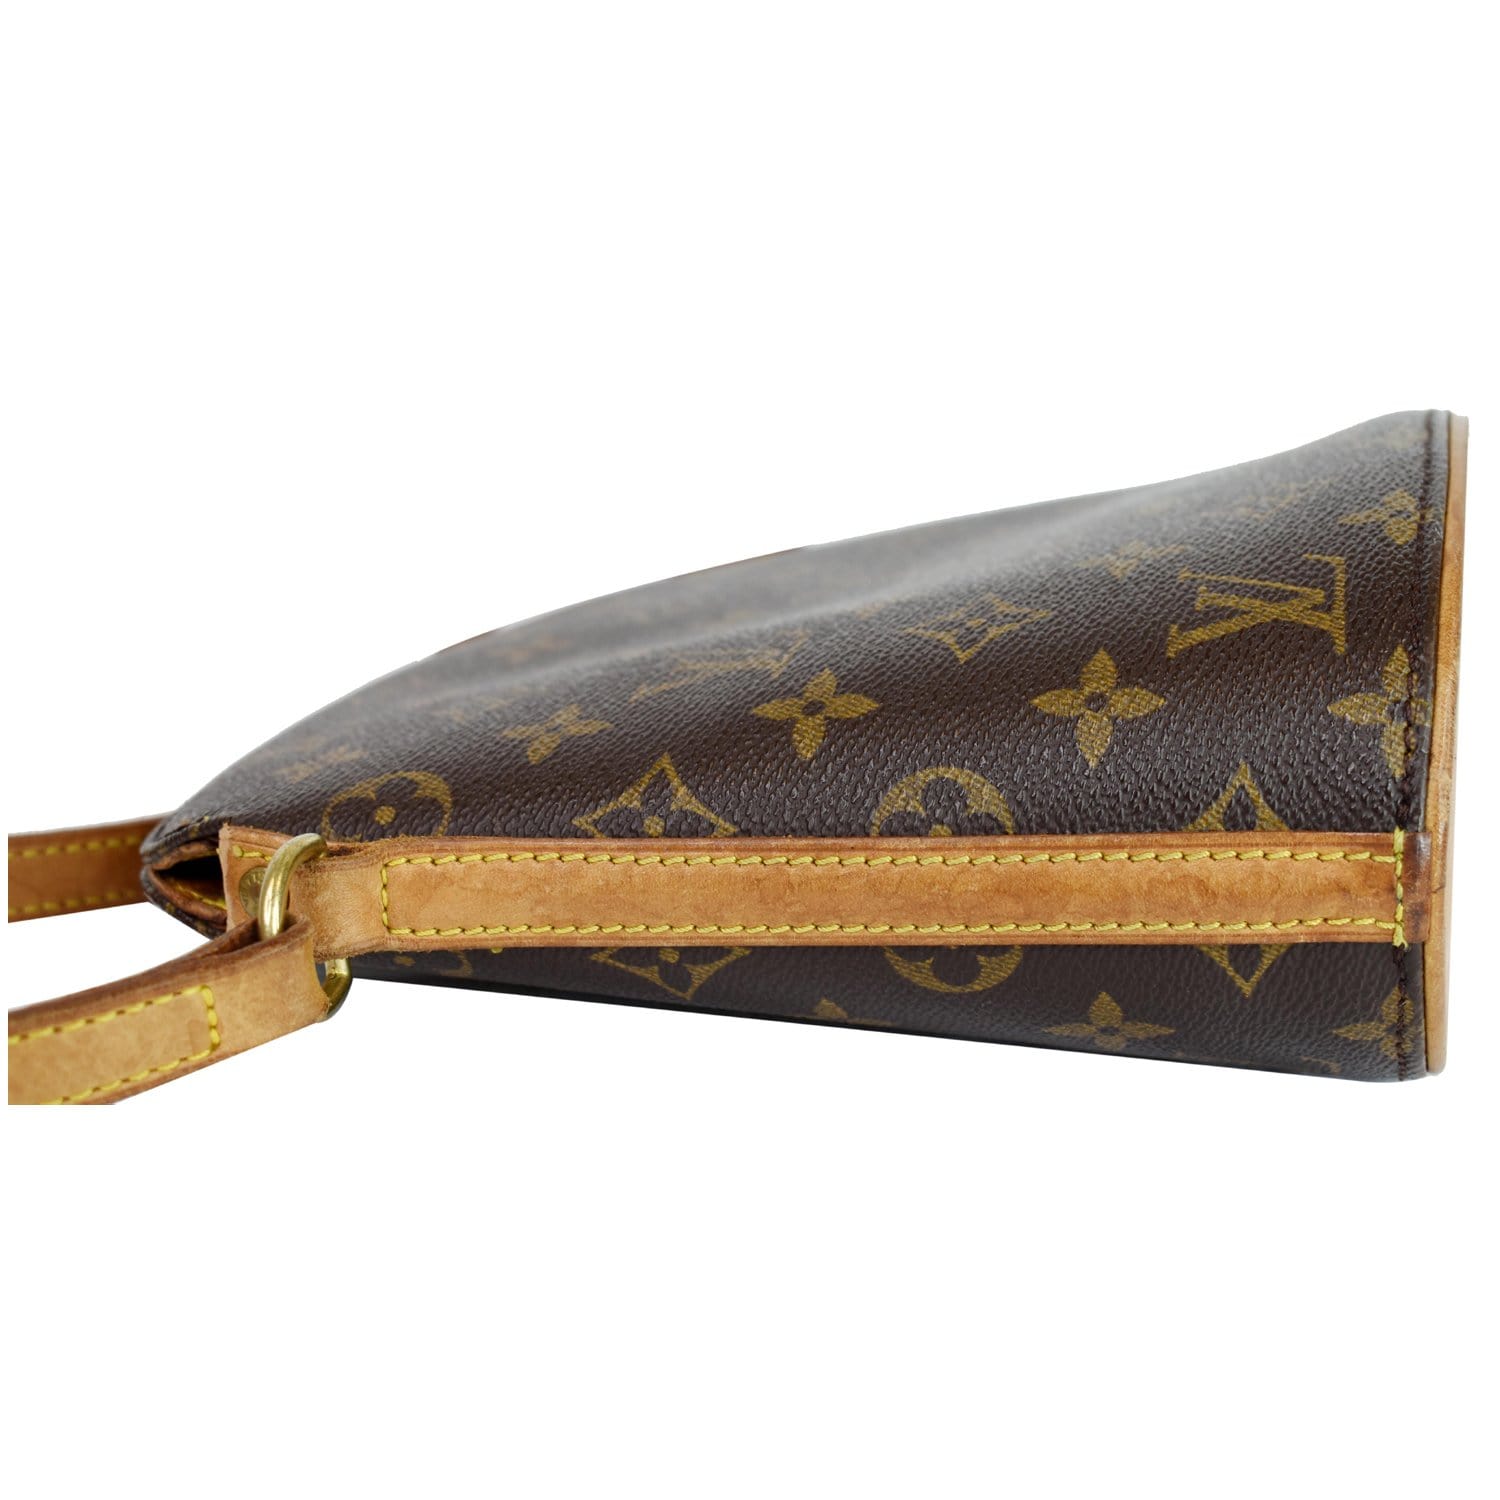 Louis Vuitton Drouot Monogram Canvas Crossbody Bag on SALE